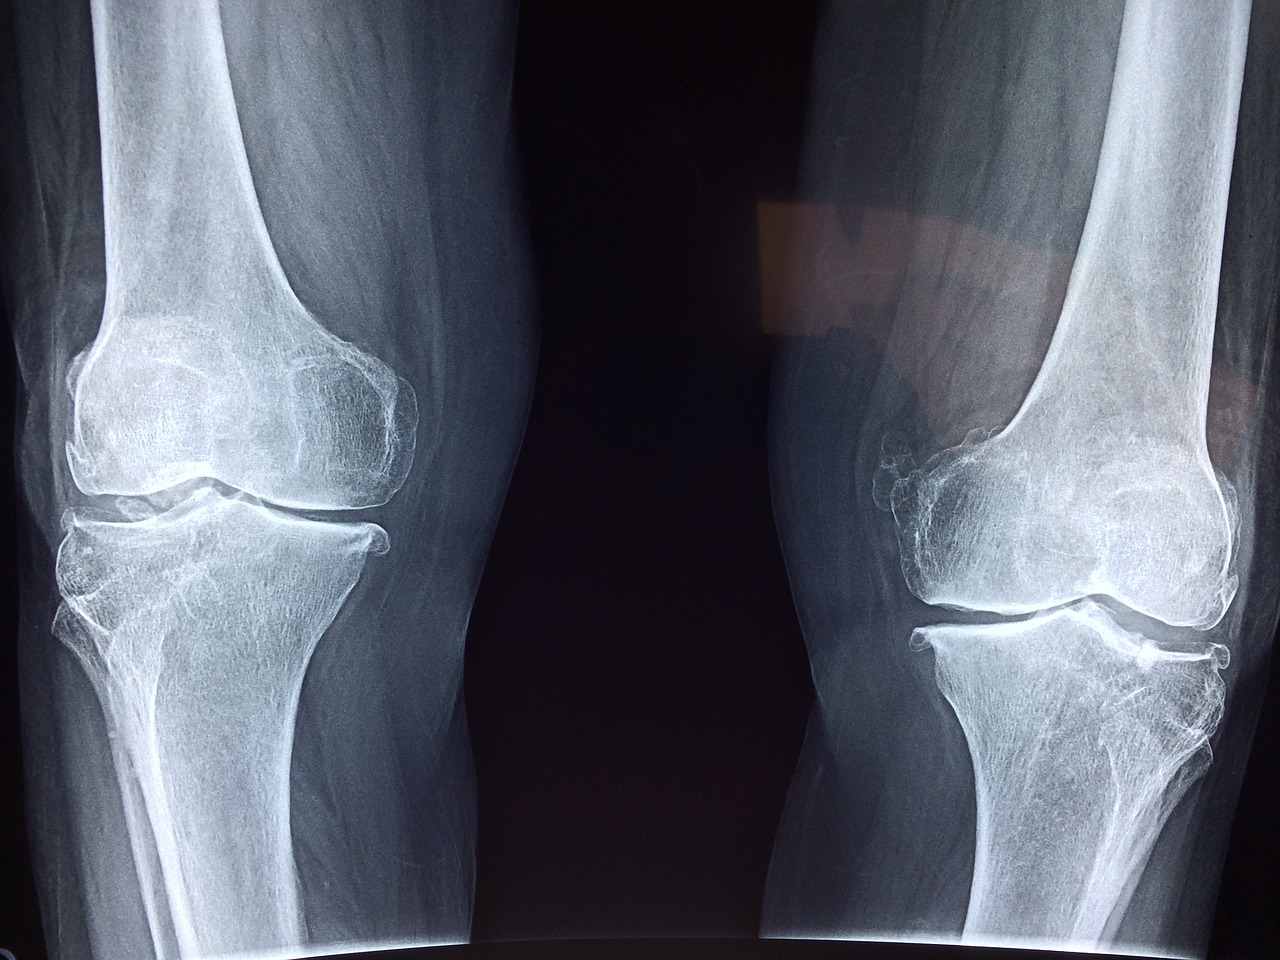 Jaki jest wybór artykułów ortopedycznych?